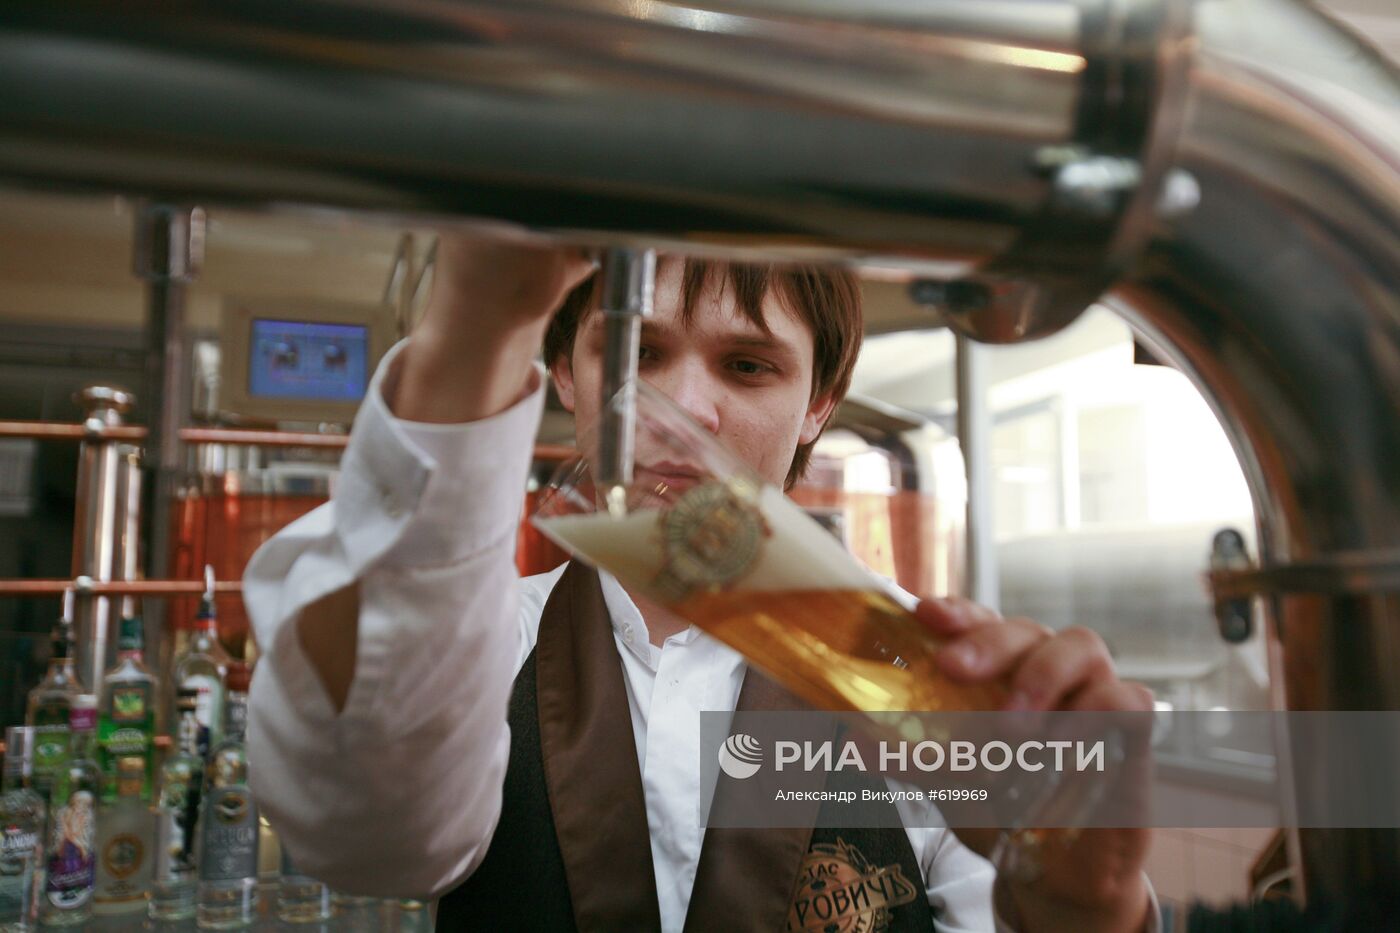 Работа частной пивоварни-ресторана "Петрович" в Ставрополе